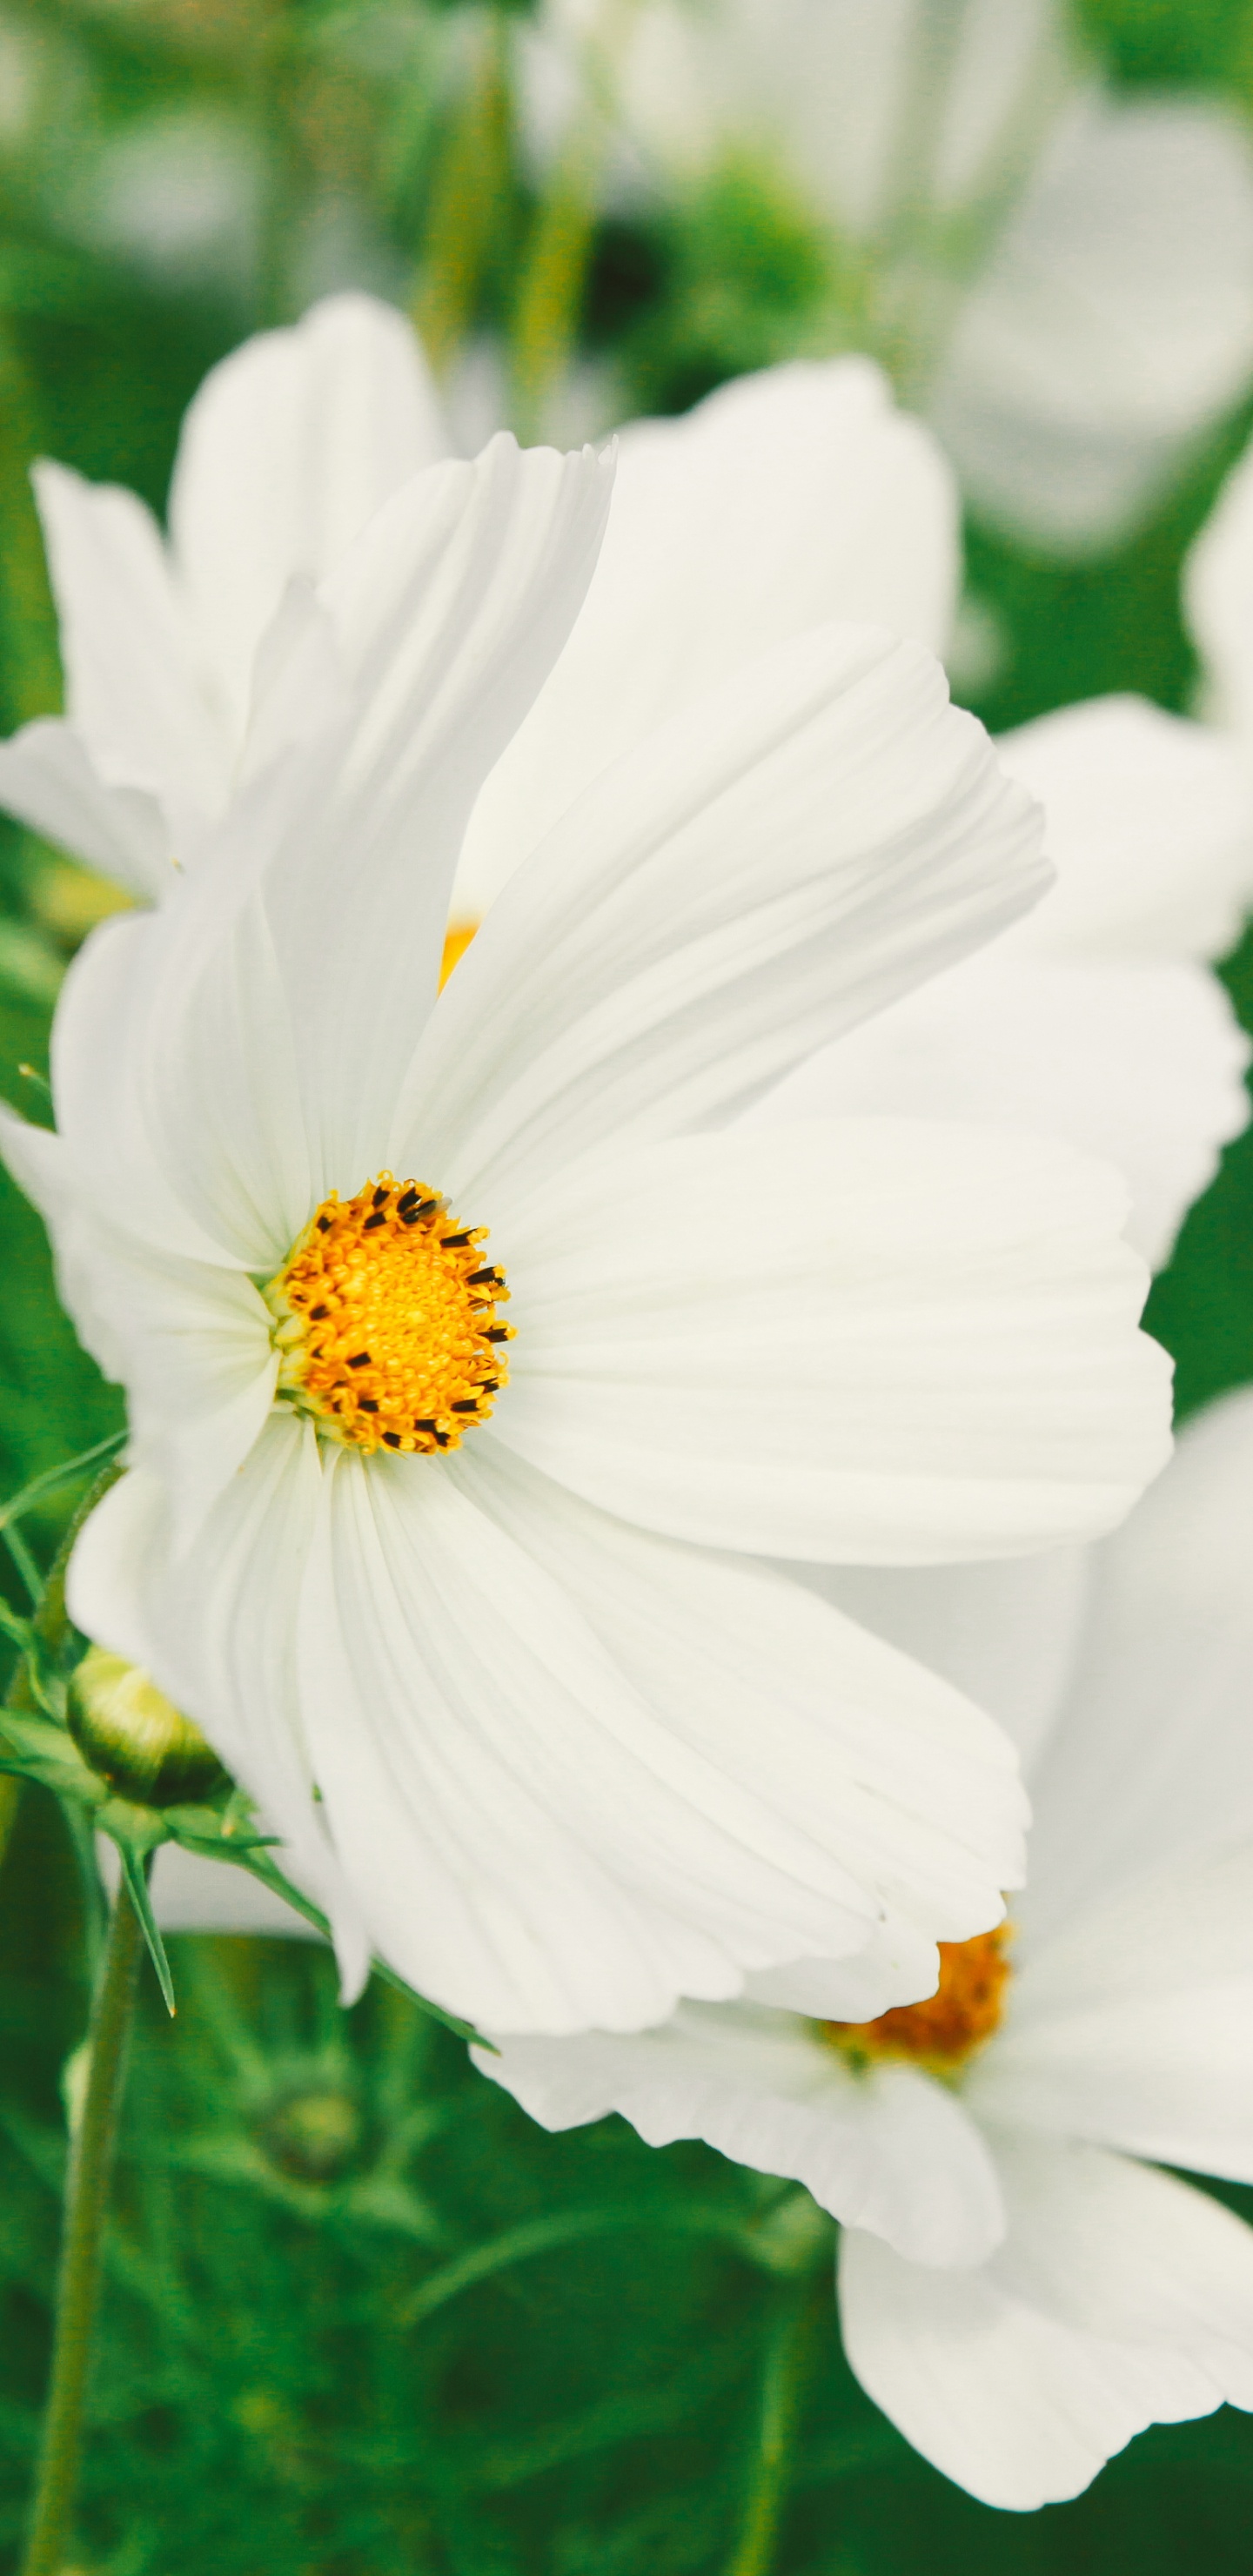 White Flowers in Tilt Shift Lens. Wallpaper in 1440x2960 Resolution